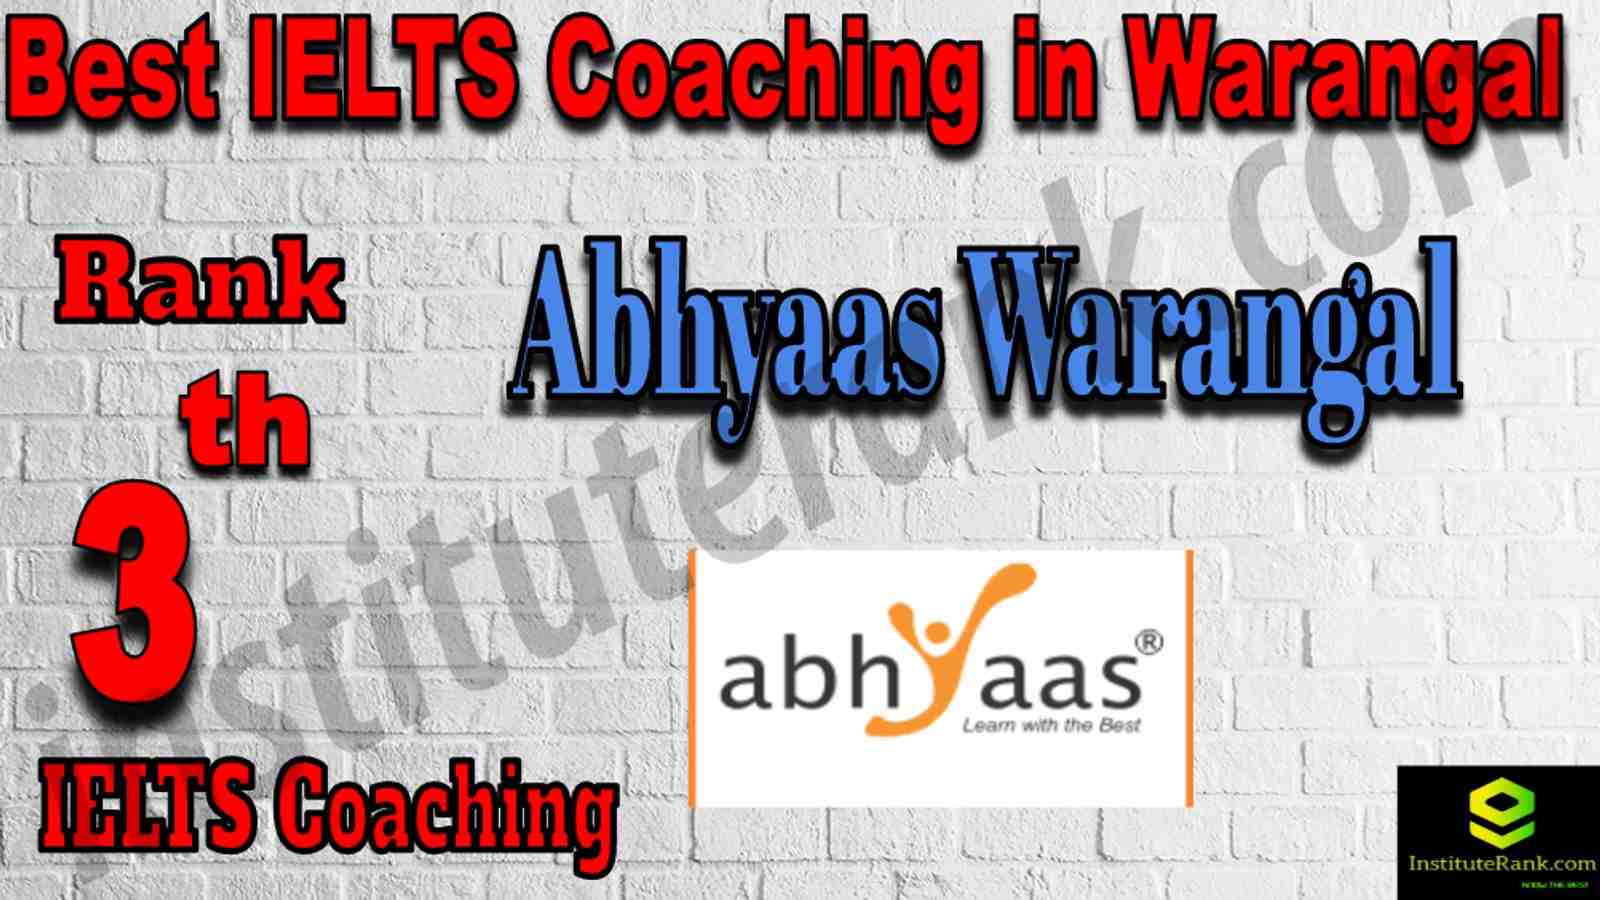 3rd Best IELTS Coaching in Warangal